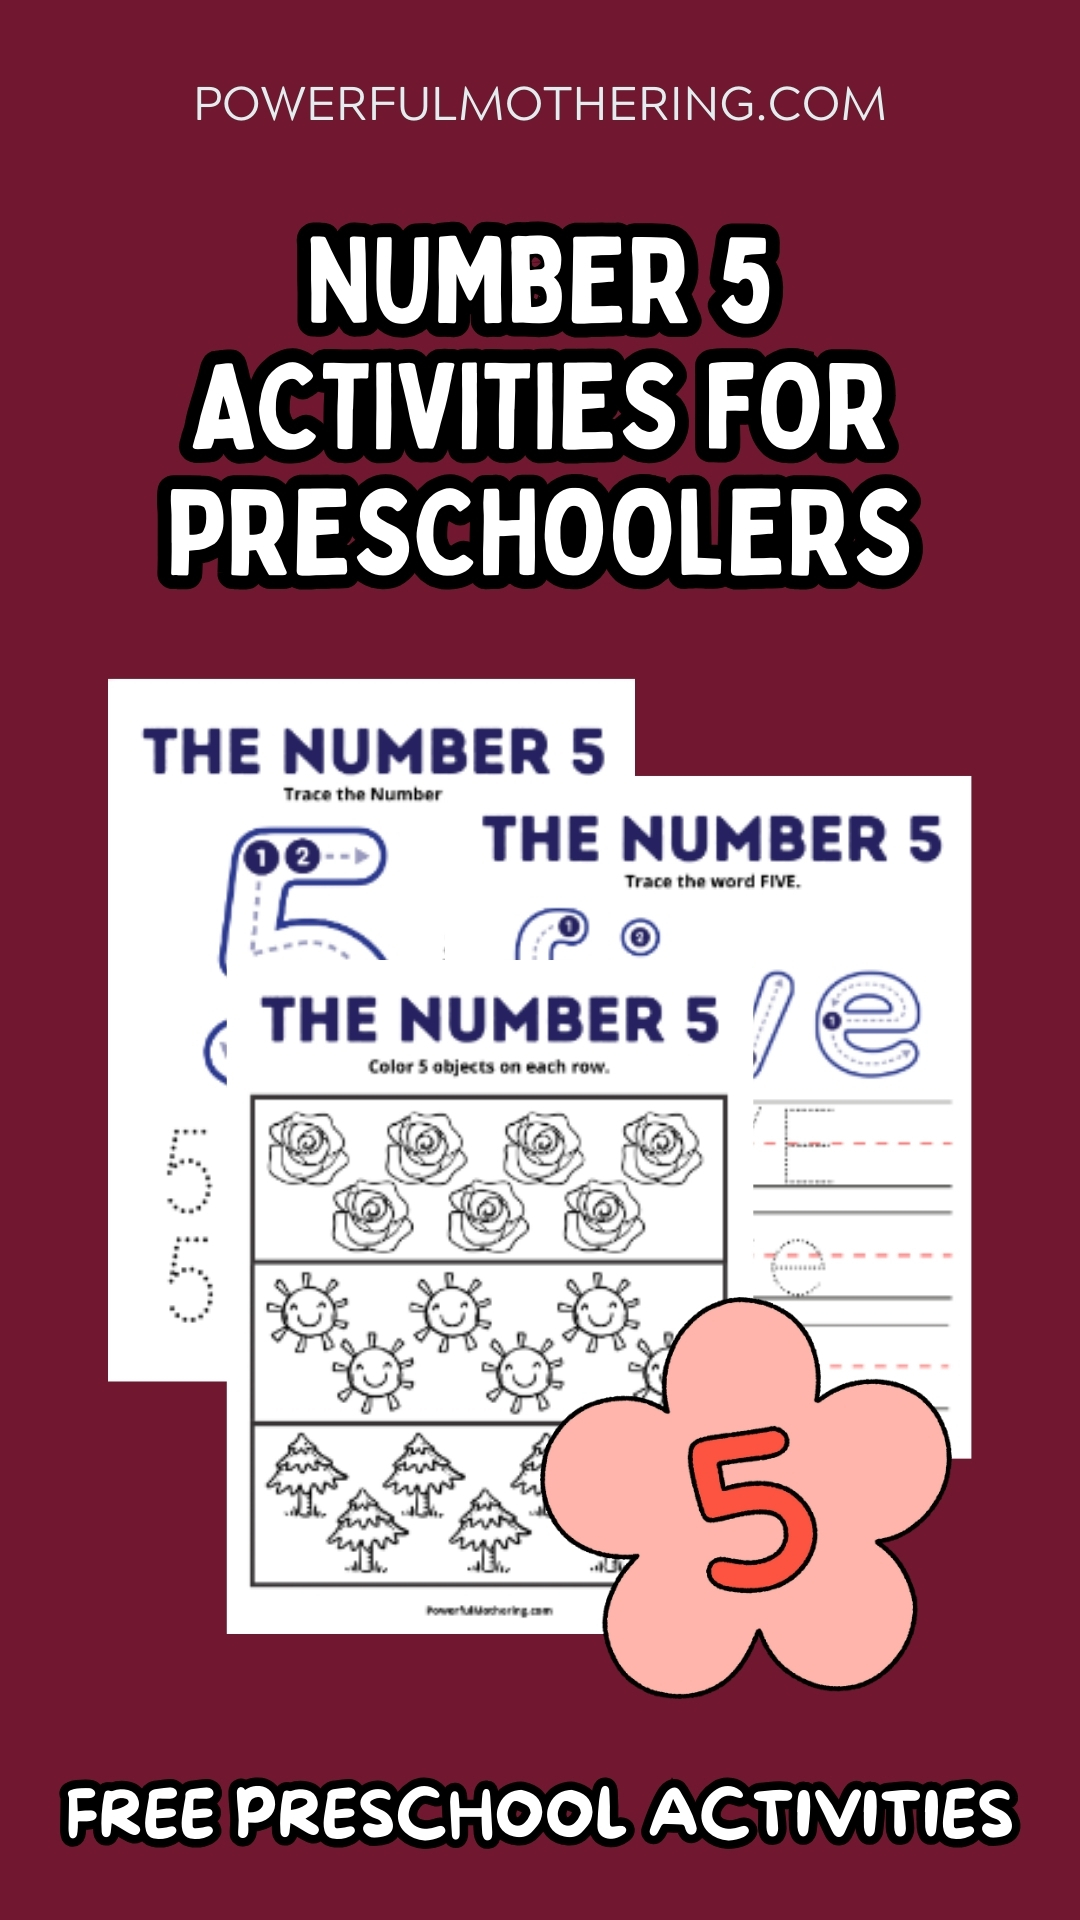 Number 5 Activities for Preschoolers